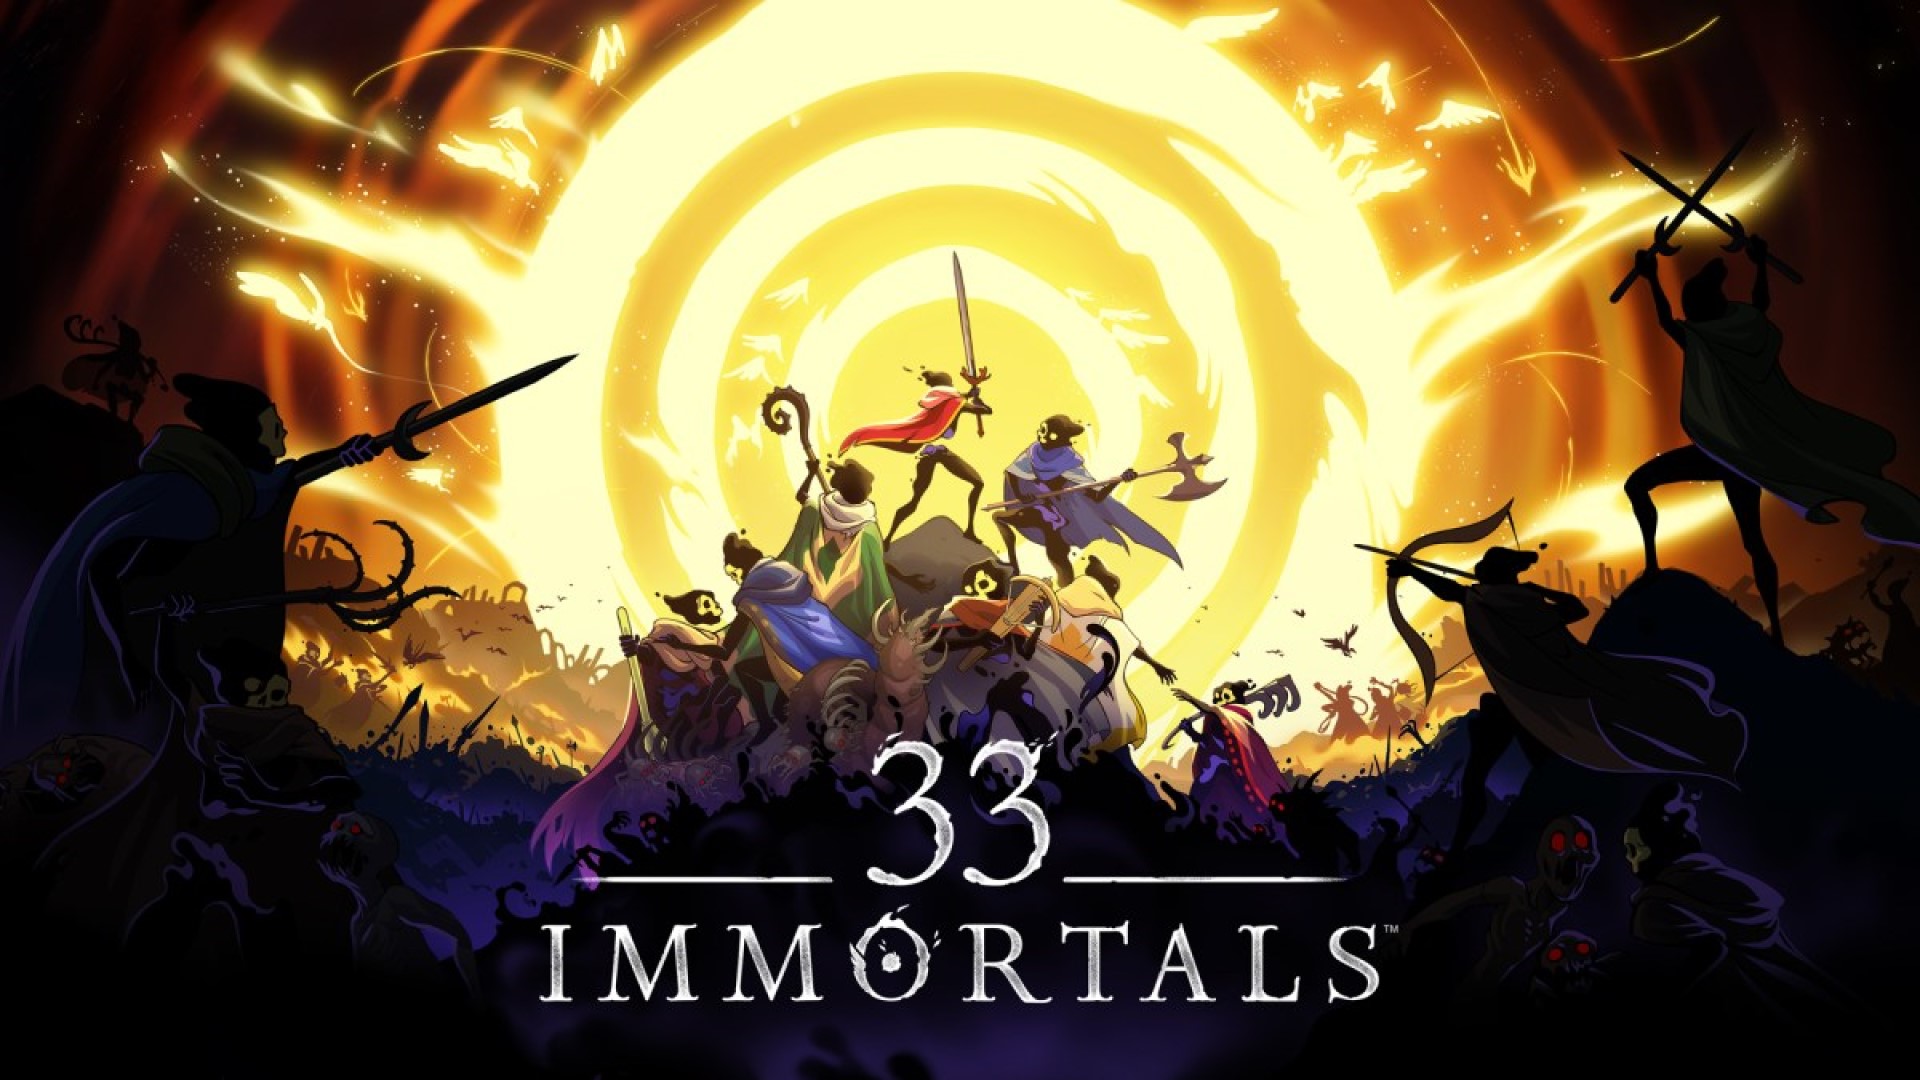 Twórcy 33 Immortals opublikowali nowy zwiastun z rozgrywką i ogłosili datę zamkniętych testów gry